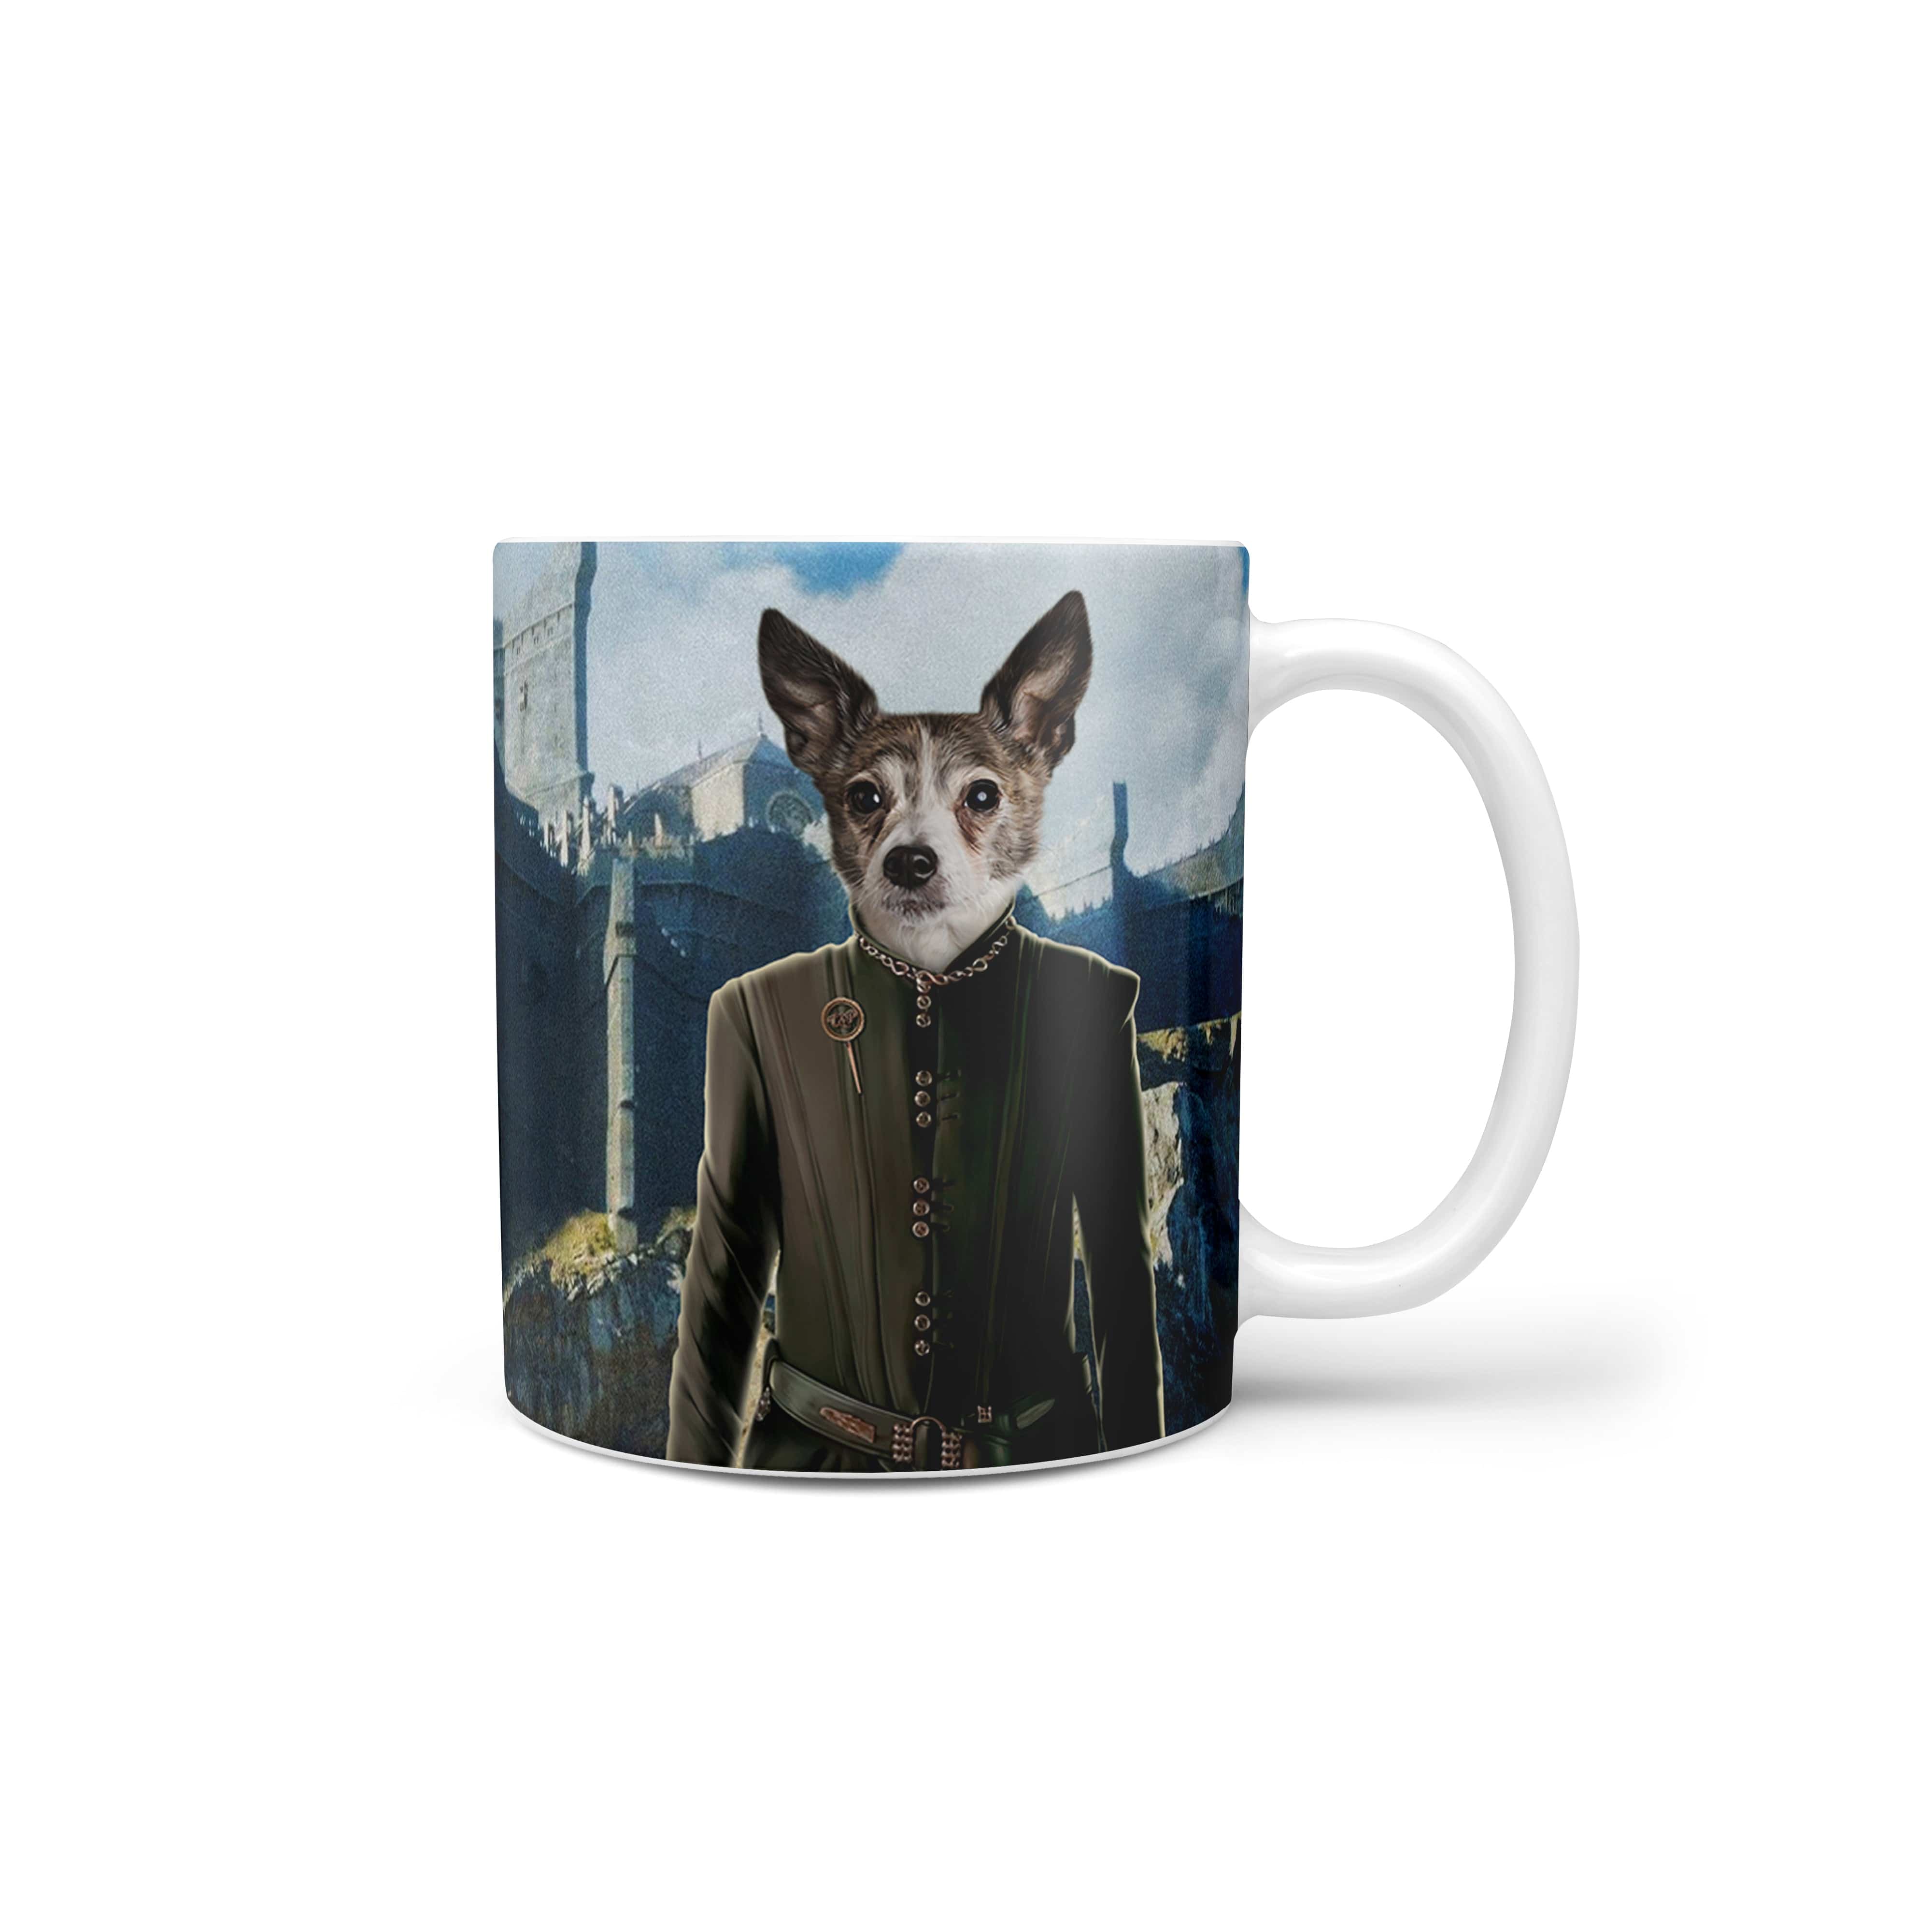 The King's Informer - Custom Mug